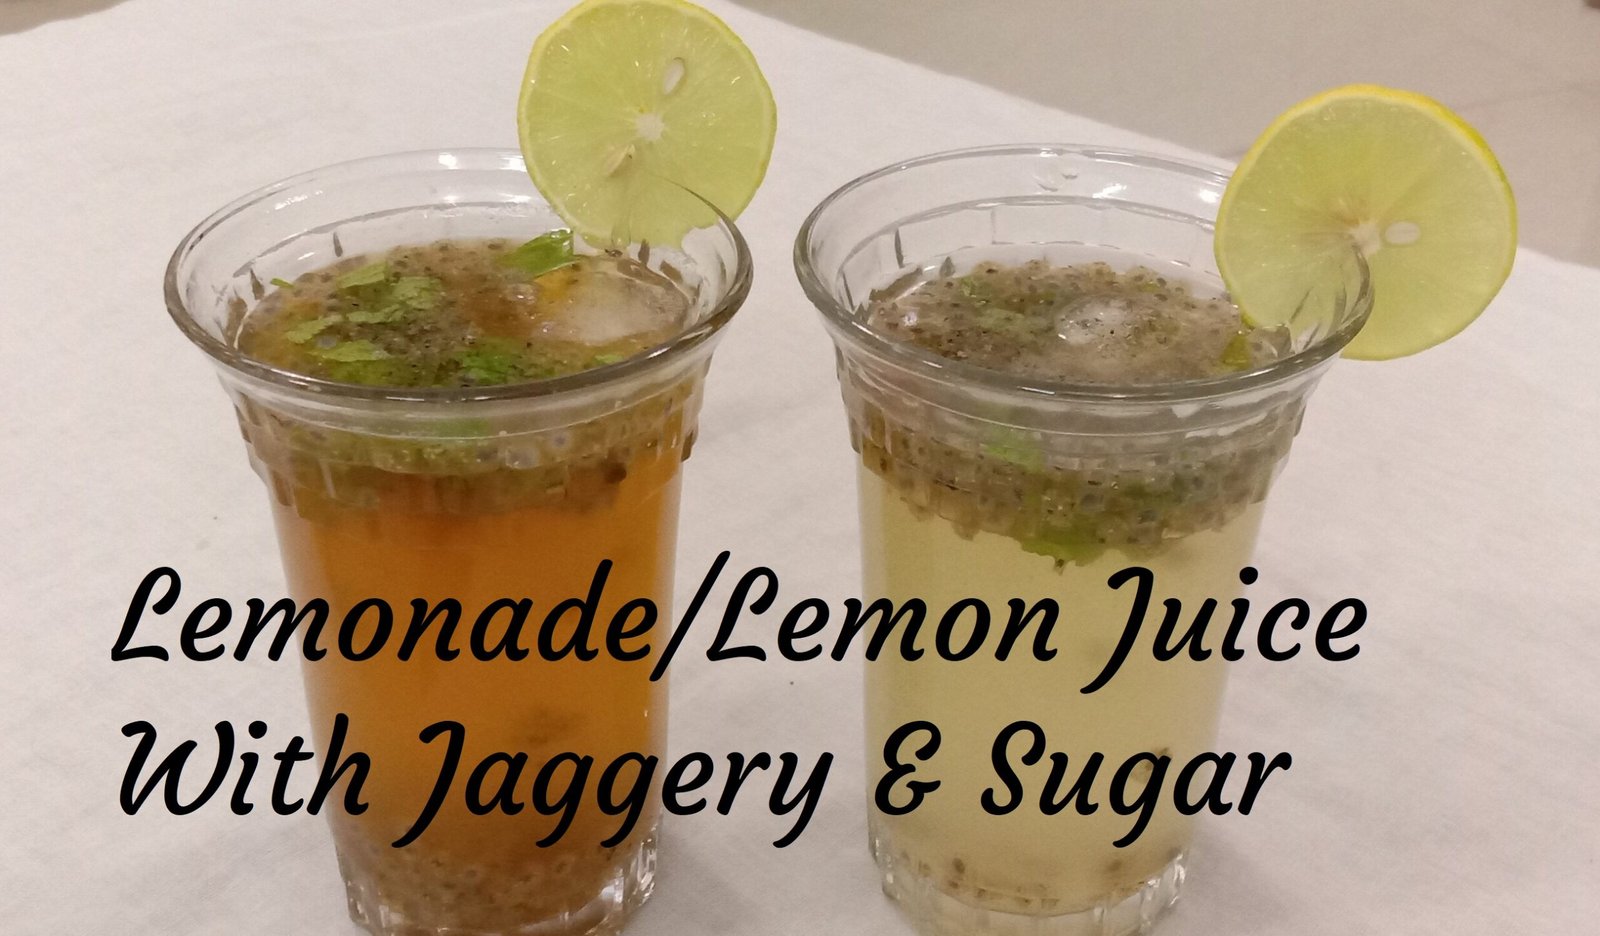 Lemonade in glass, Lemonade recipe.